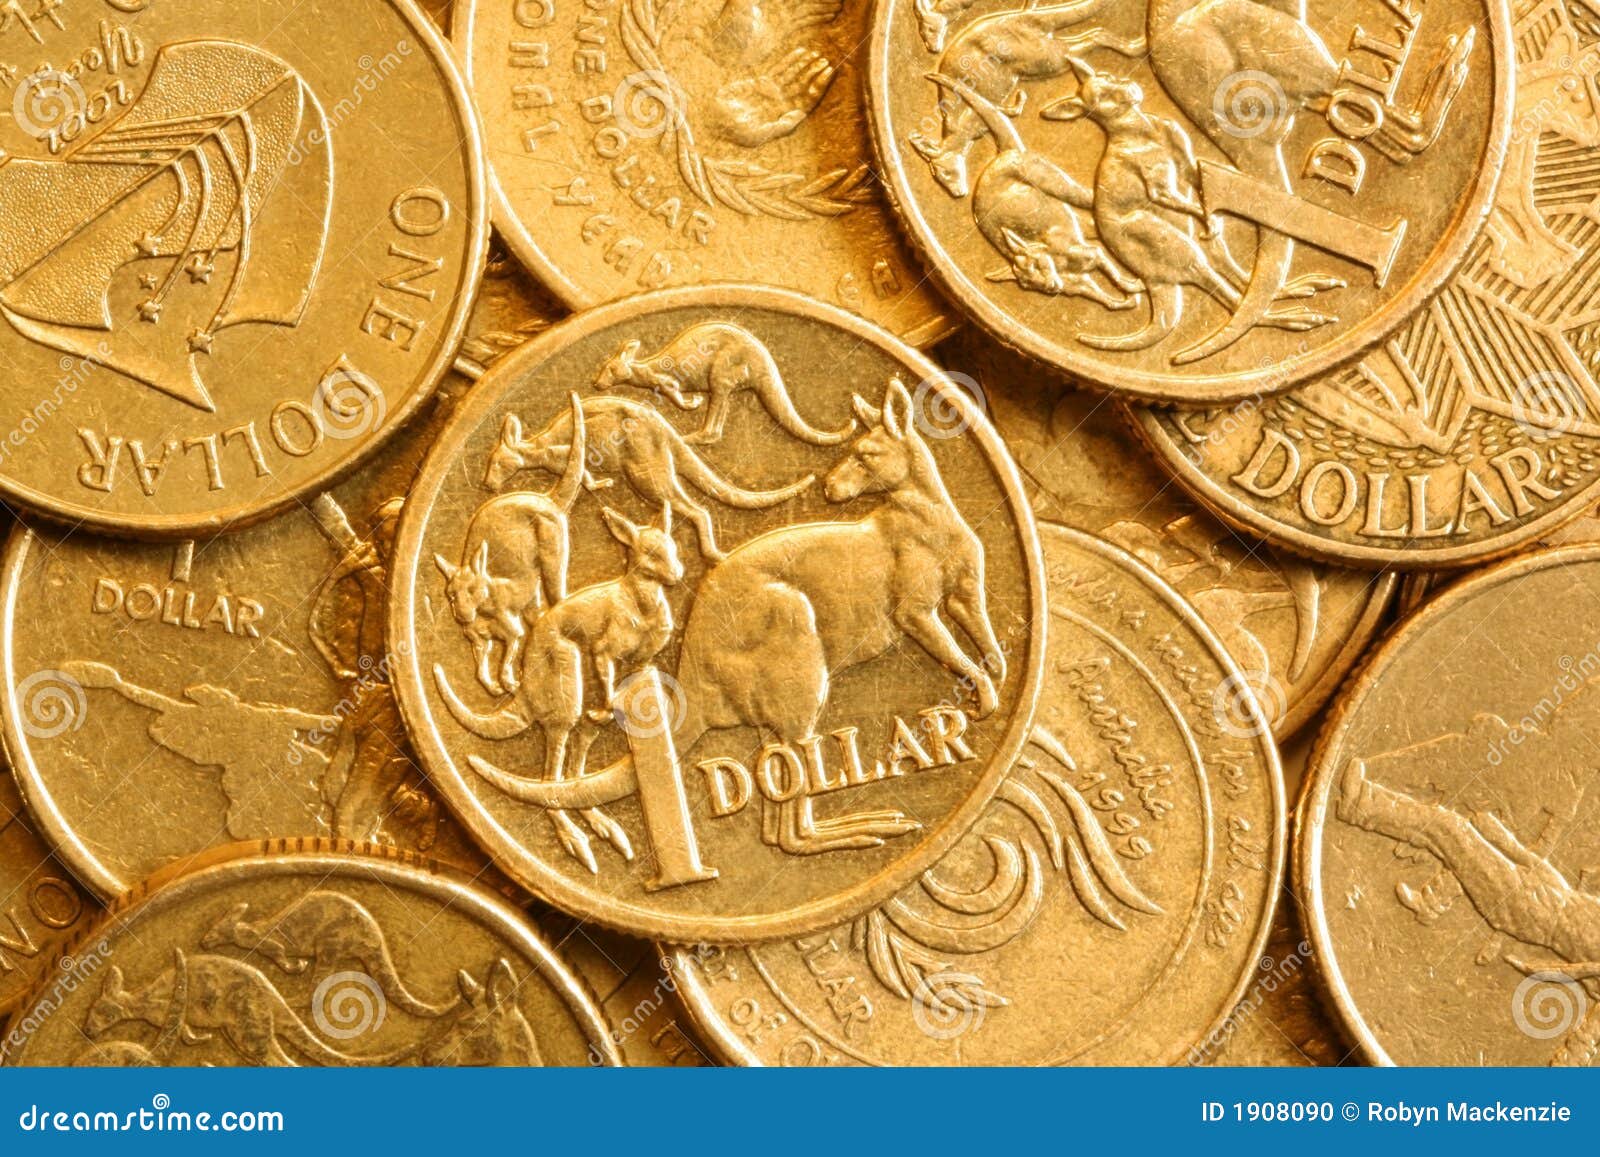 австралийская предпосылка чеканит доллар одно. австралийская бронза чеканит рамку вполне одно доллара